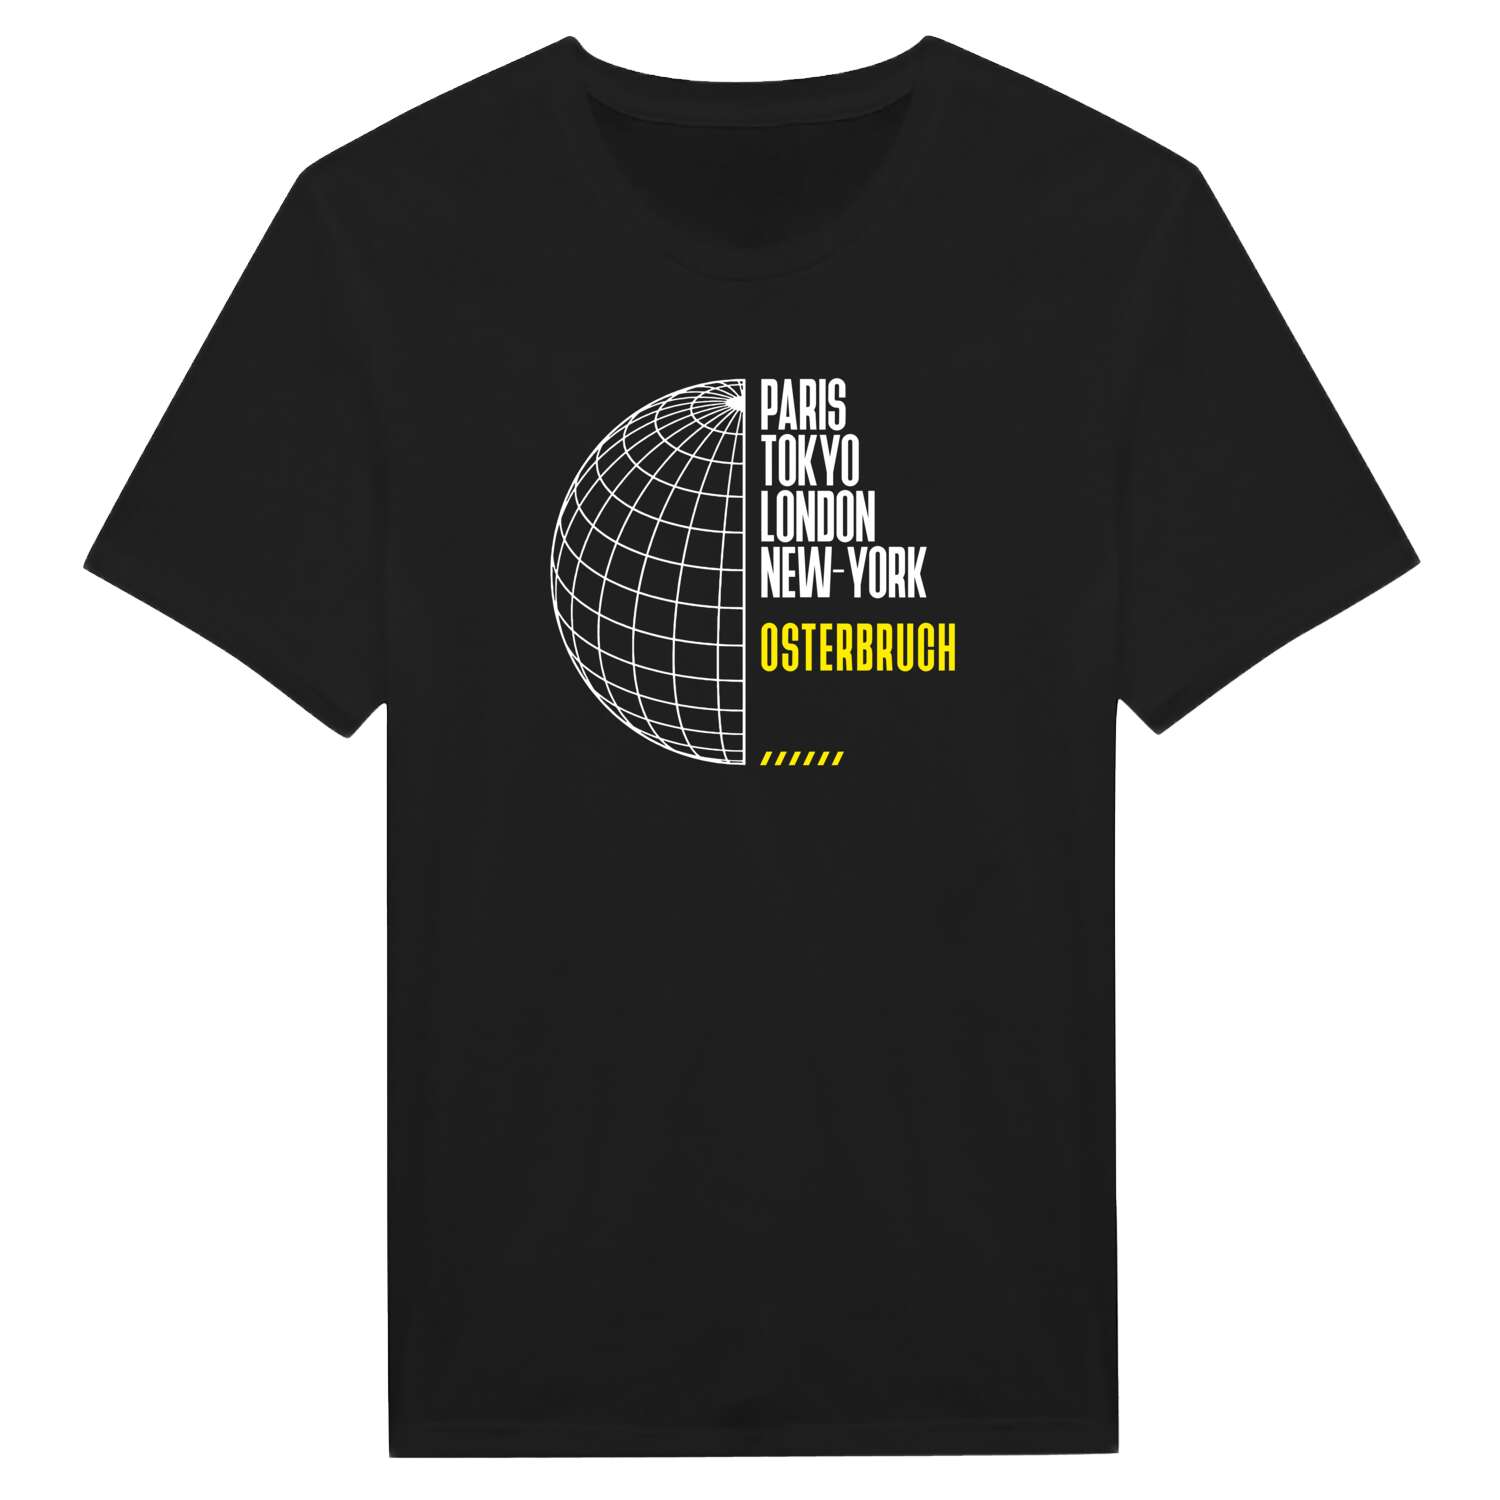 Osterbruch T-Shirt »Paris Tokyo London«